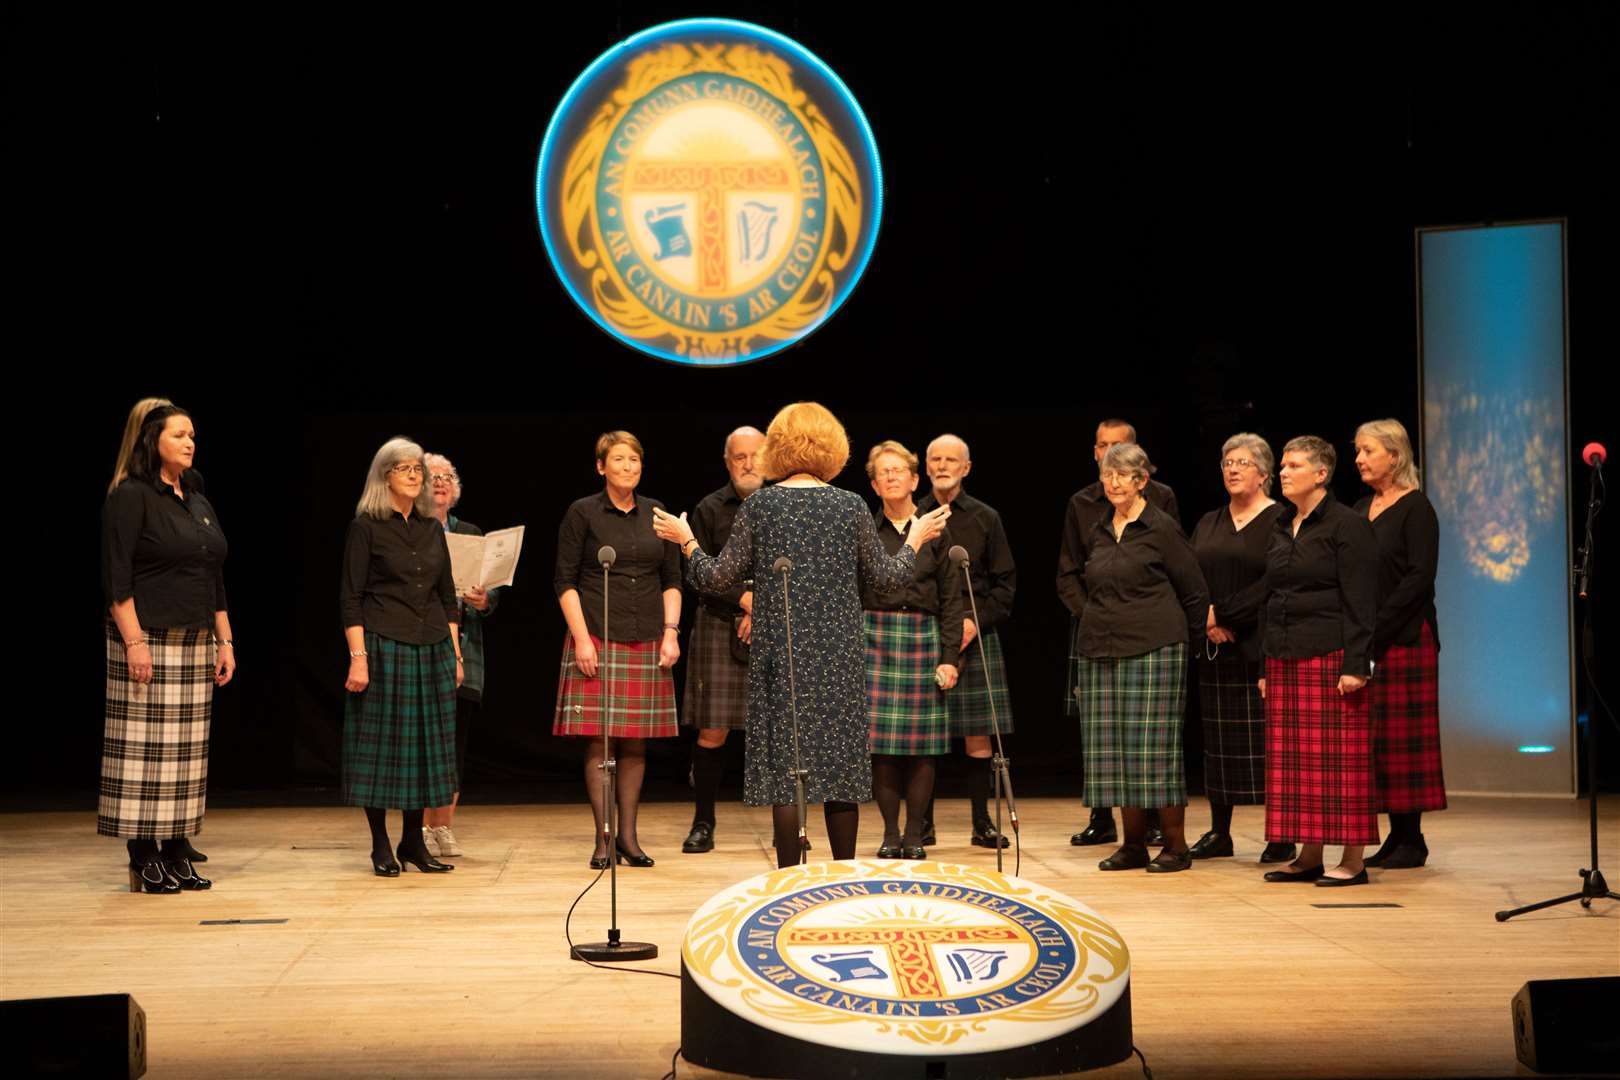 Lairg Gaelic Choir.